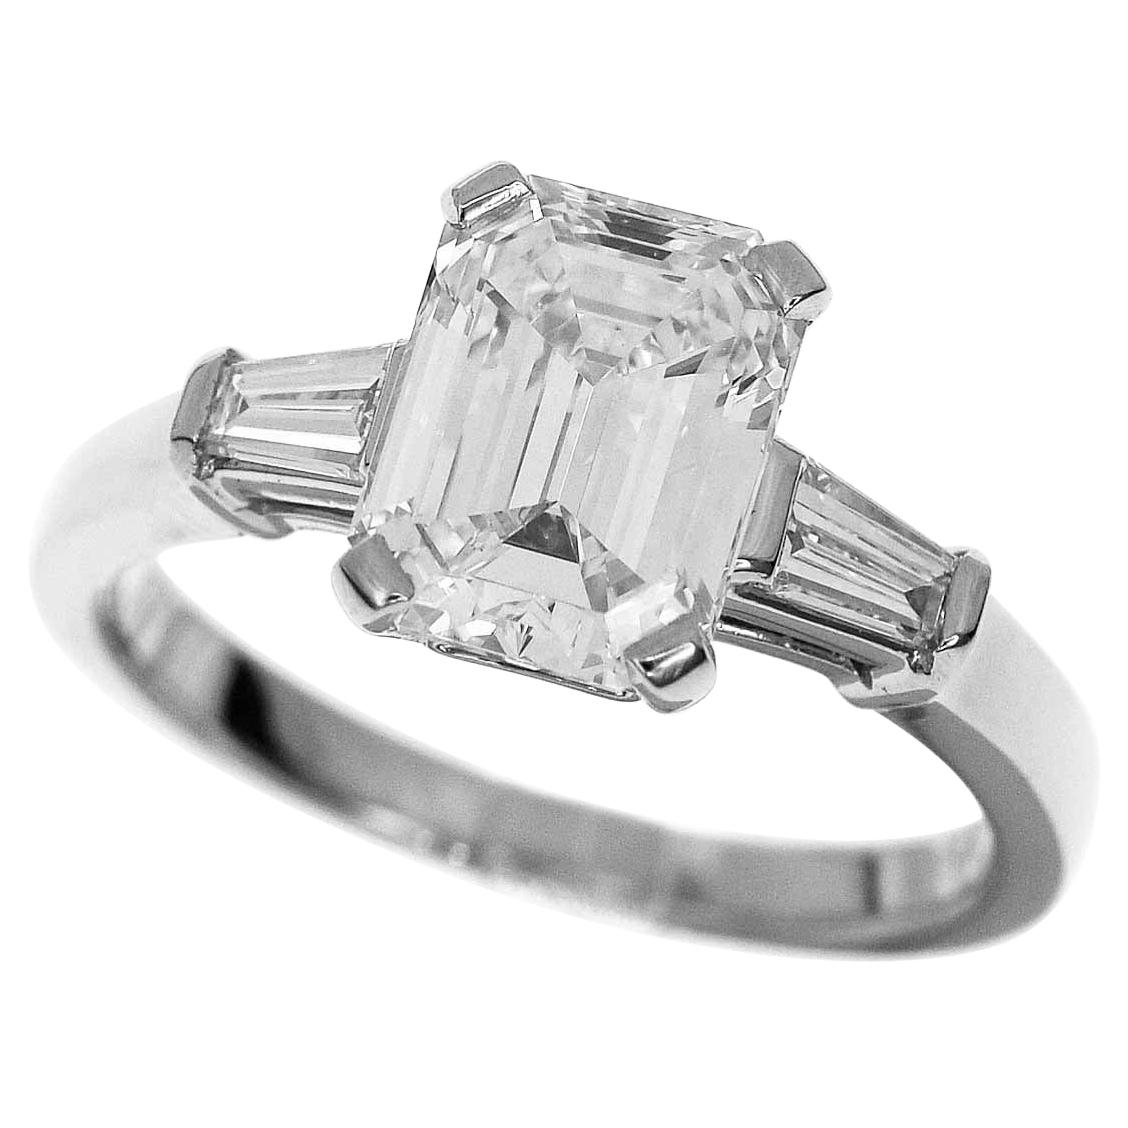 Bvlgari 1.61 Carat Diamond Platinum Griffe Solitaire Ring